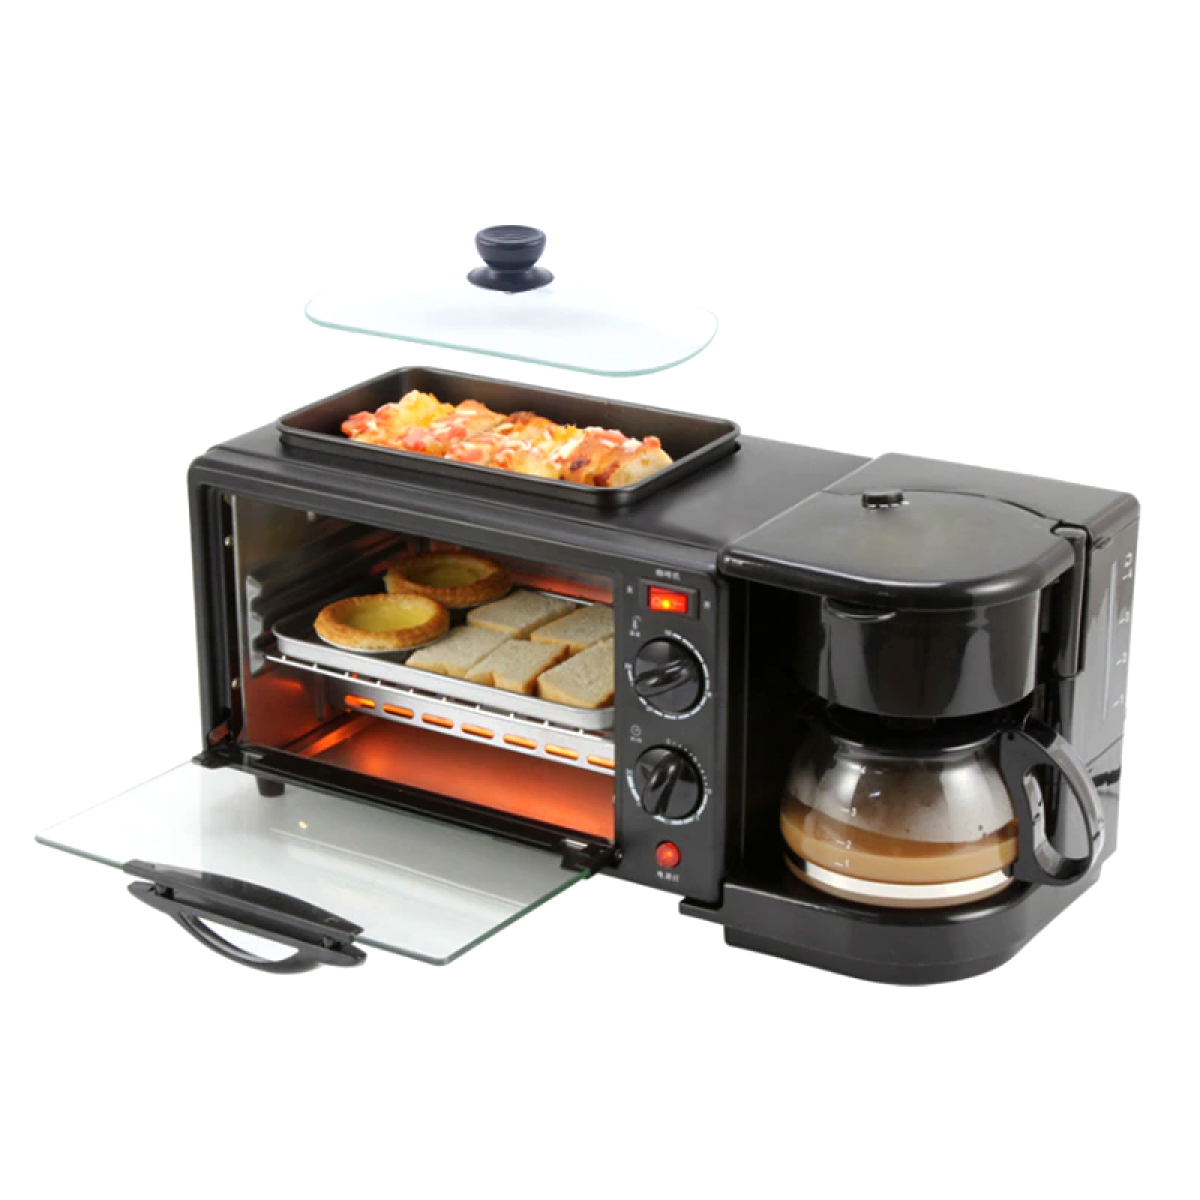 Mini horno tostador 3en1 😍 Precio: $55 Mini horno tostador + cafetera +  plancha antiadherente 🤩 Ideal para el desayuno y ahorrar tiempo a…